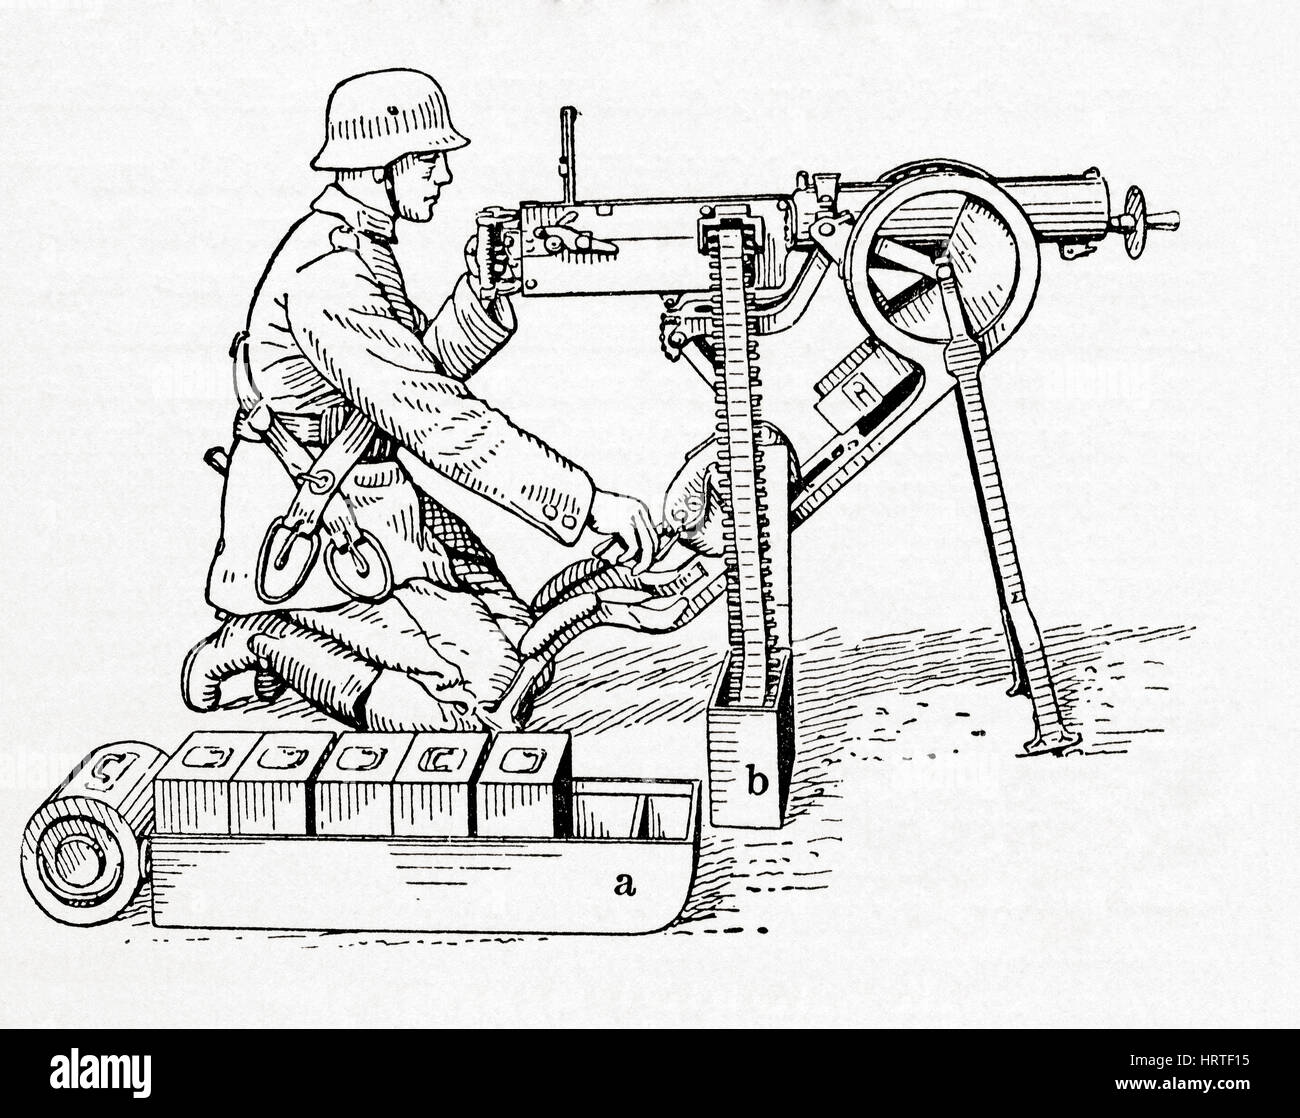 Ein deutscher Soldat ein Maxim-Maschinengewehr im ersten Weltkrieg in Betrieb. Es war das erste Rückstoß-betrieben Maschinengewehr, erfunden von Hiram Stevens Maxim im Jahre 1883.   Aus Meyers Lexikon veröffentlicht 1927. Stockfoto